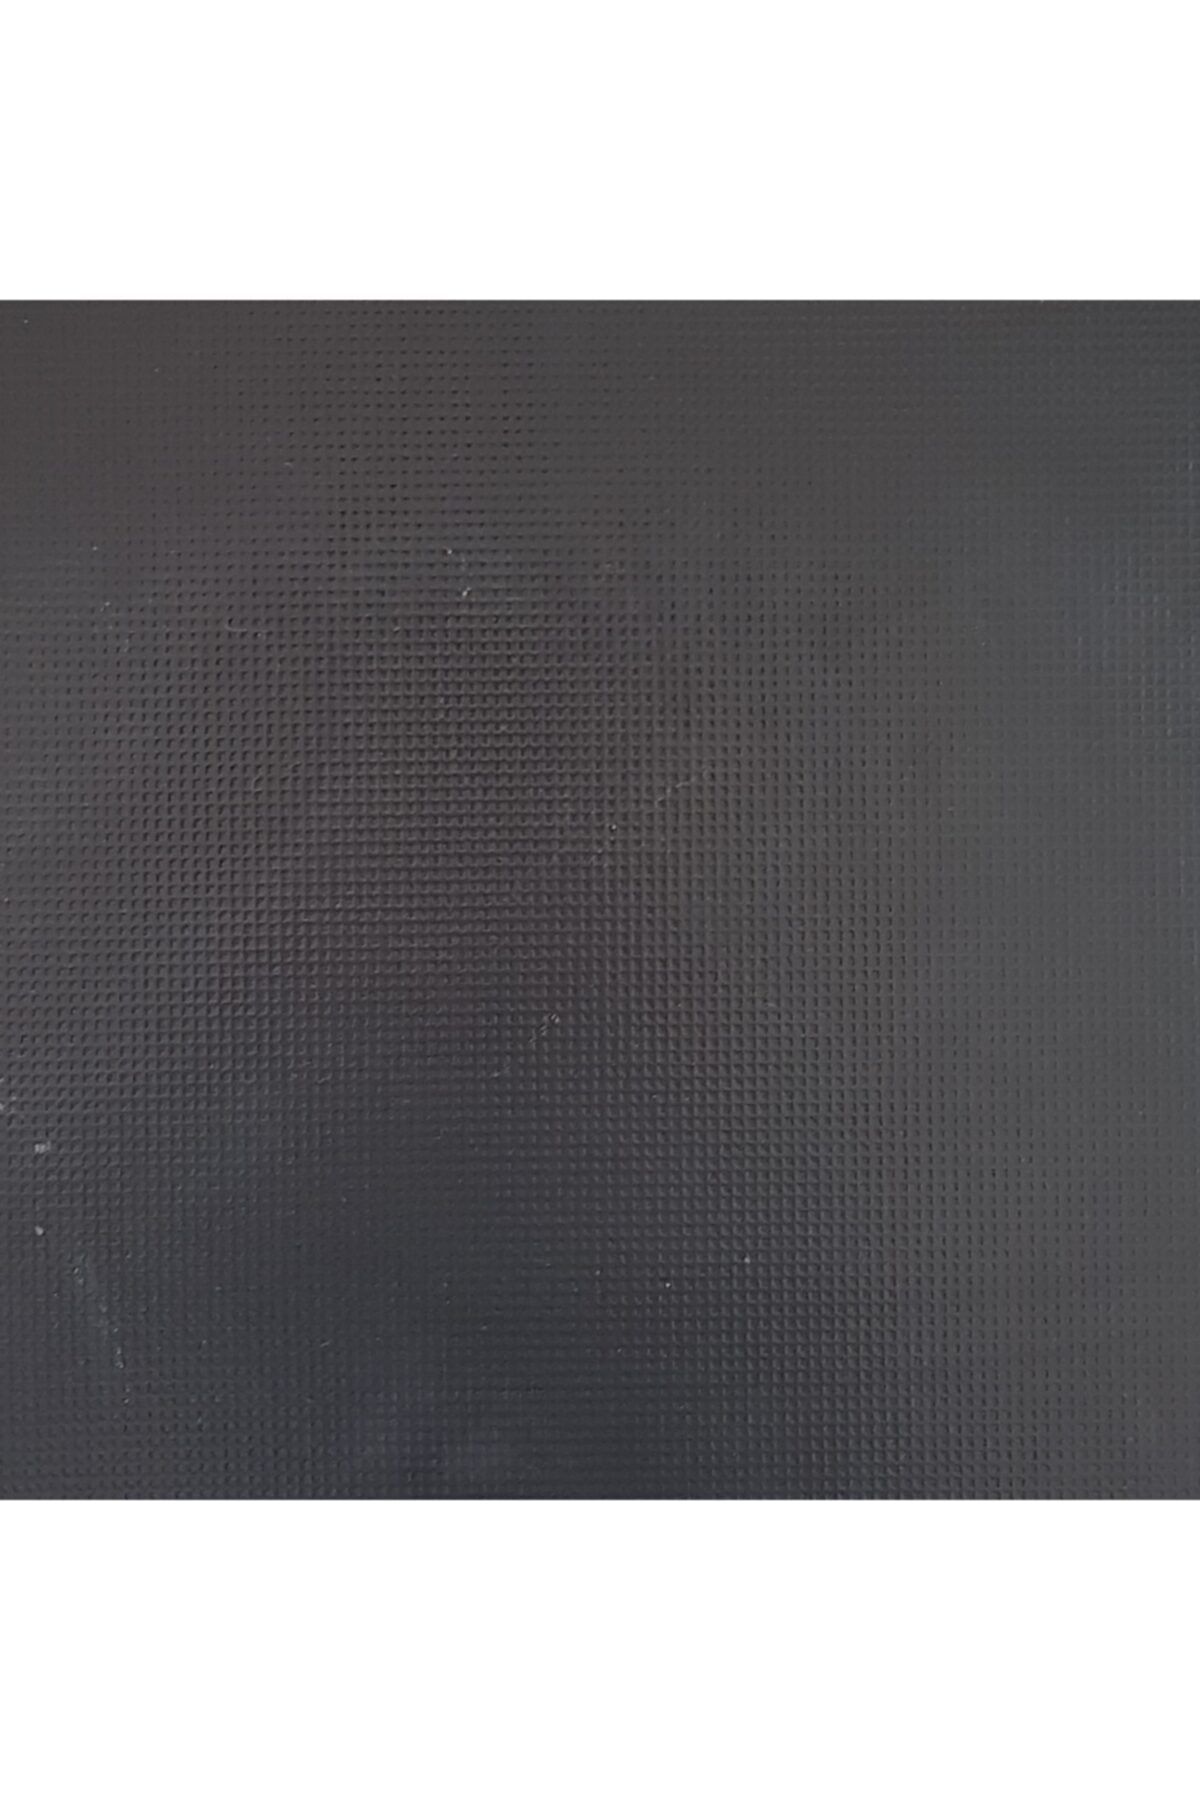 Yurtbay Mıcron Siyah Yer Duvar Seramiği 40x40